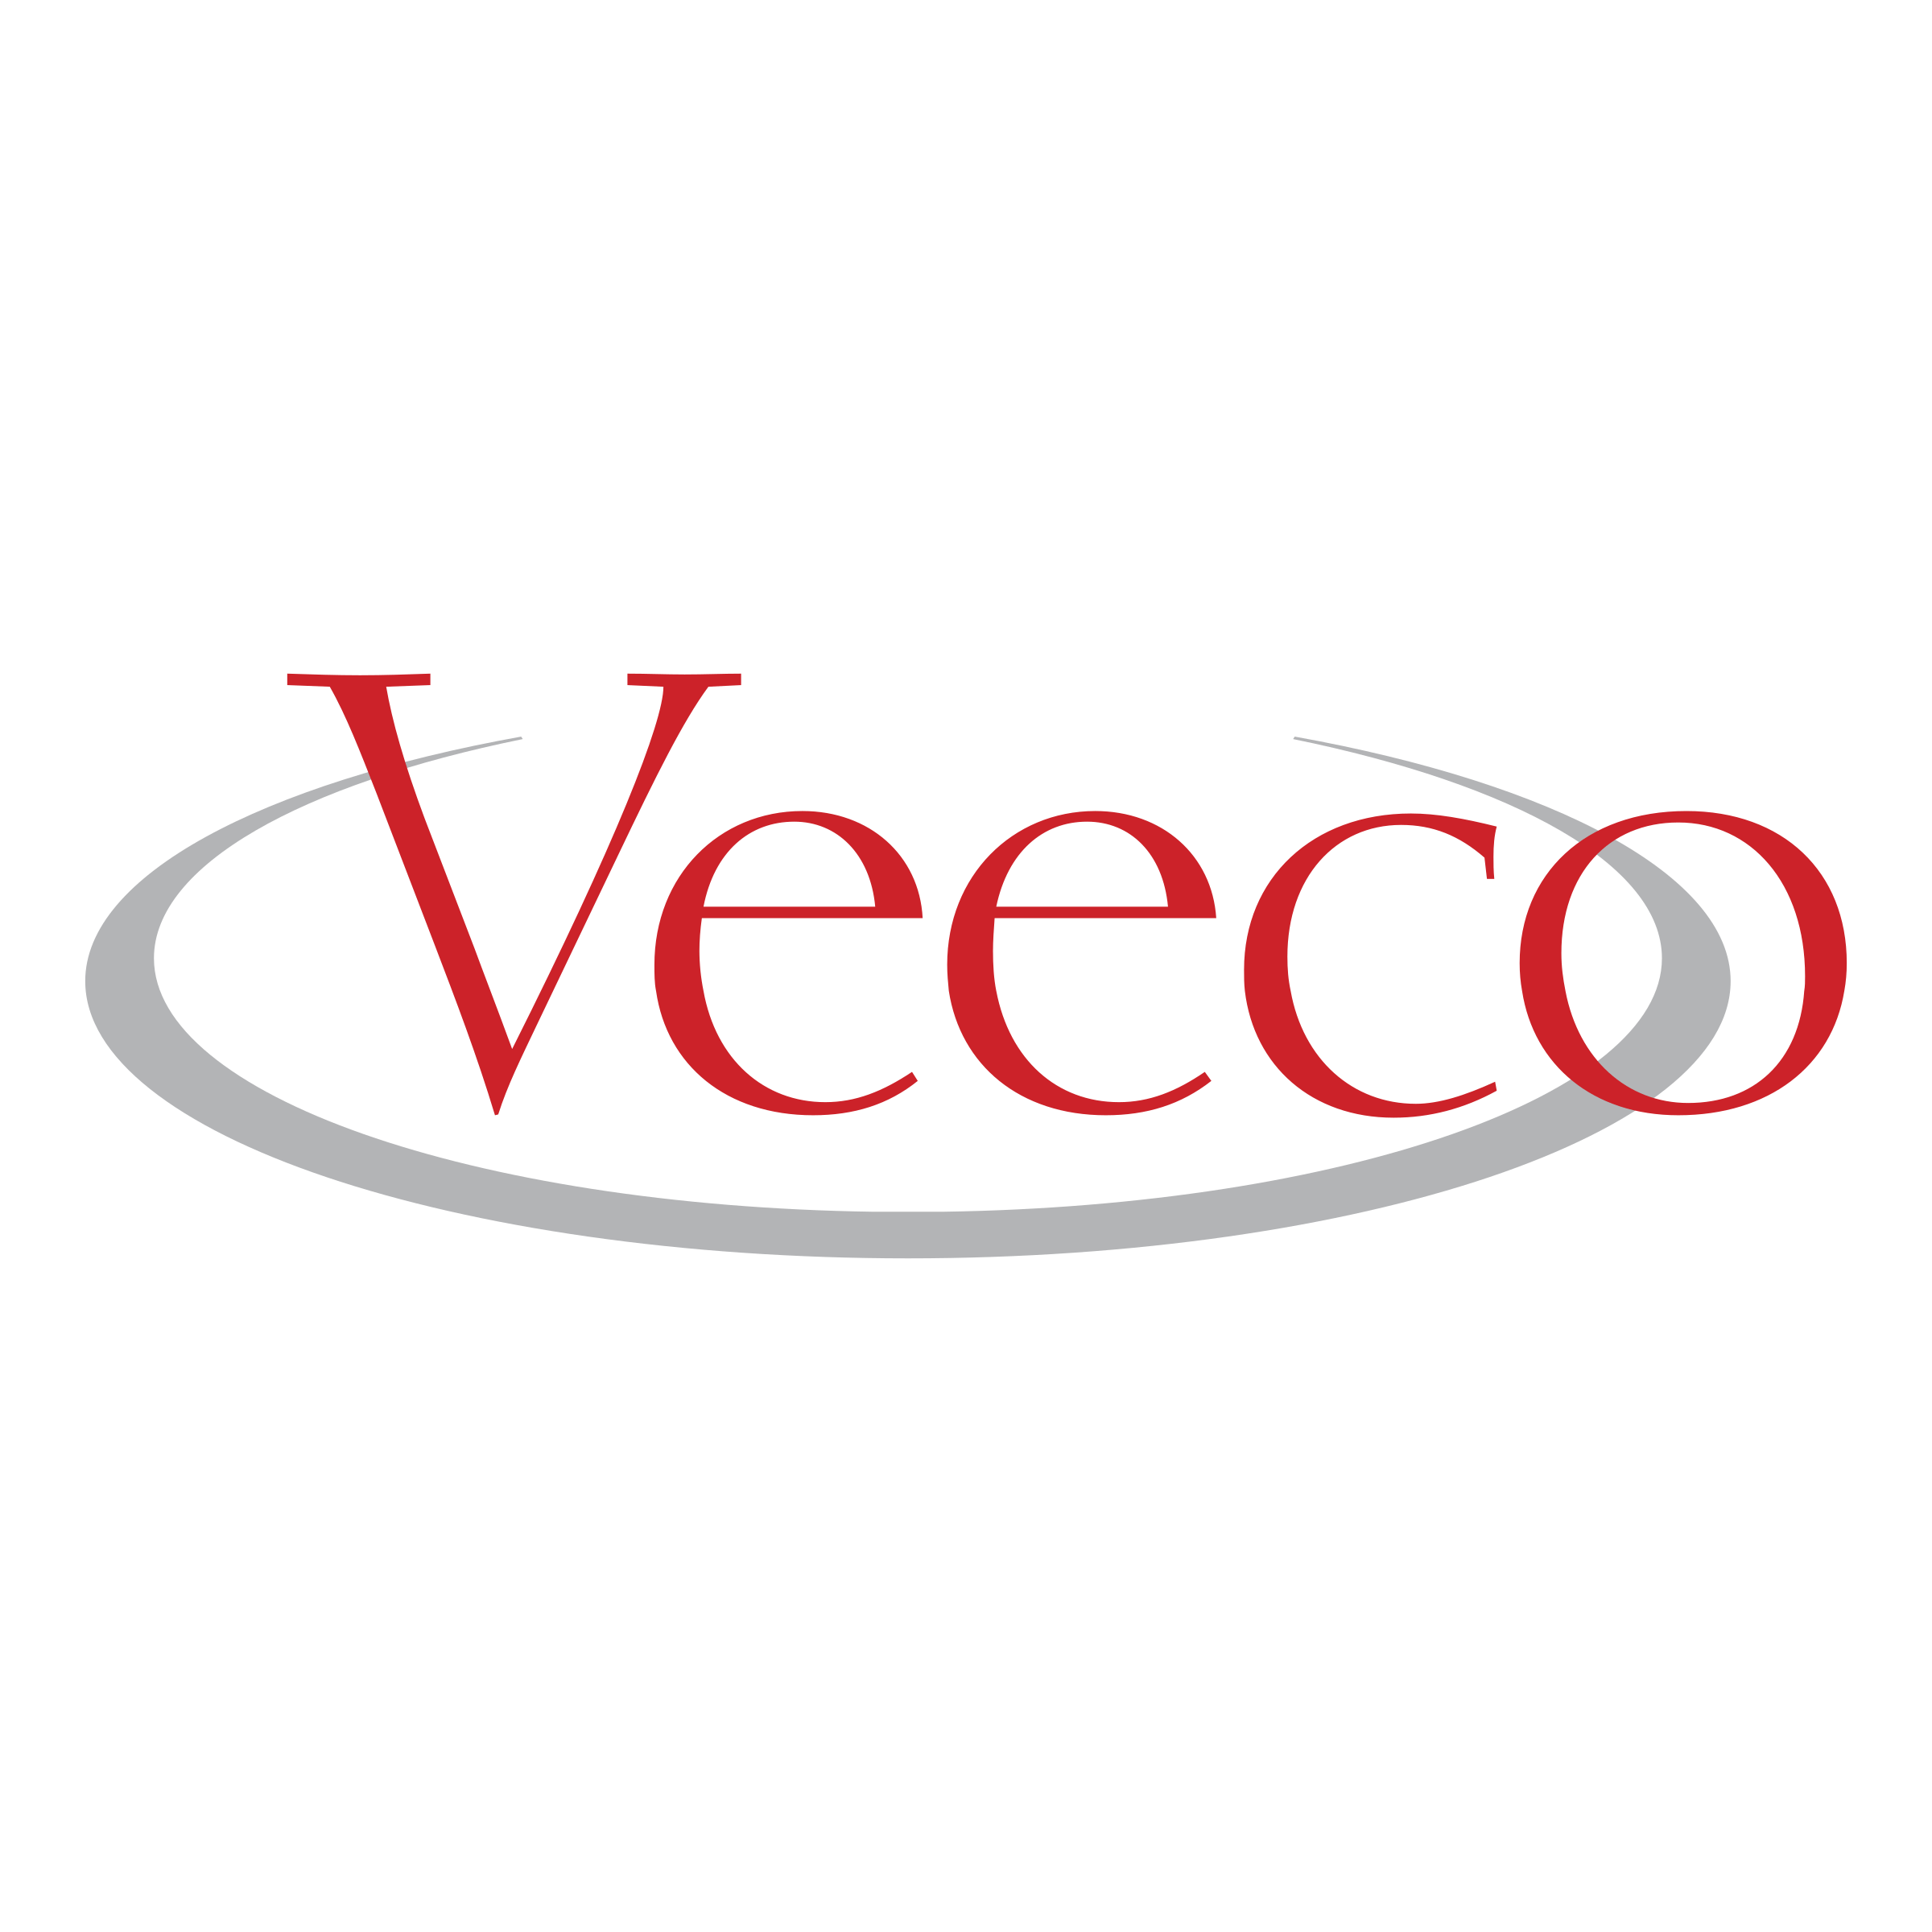 Veeco 徽标 - LogoDix